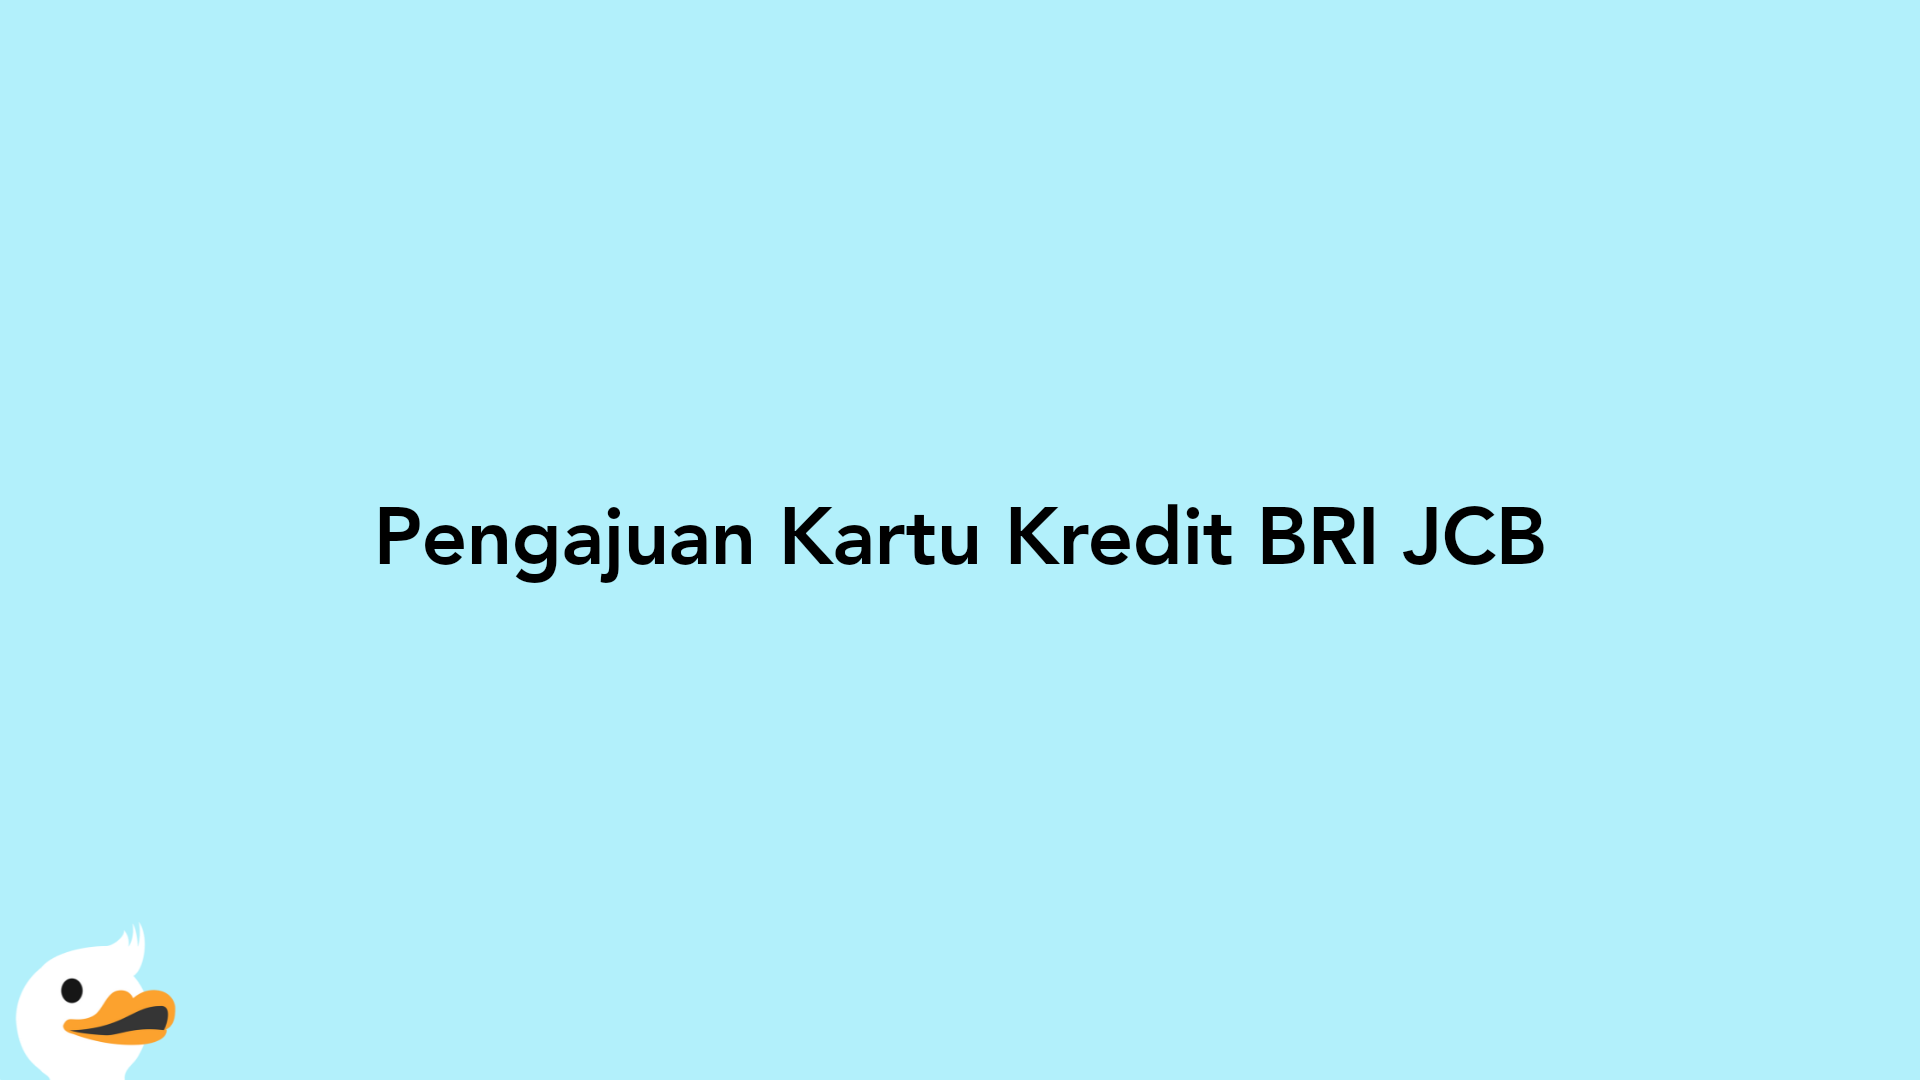 Pengajuan Kartu Kredit BRI JCB